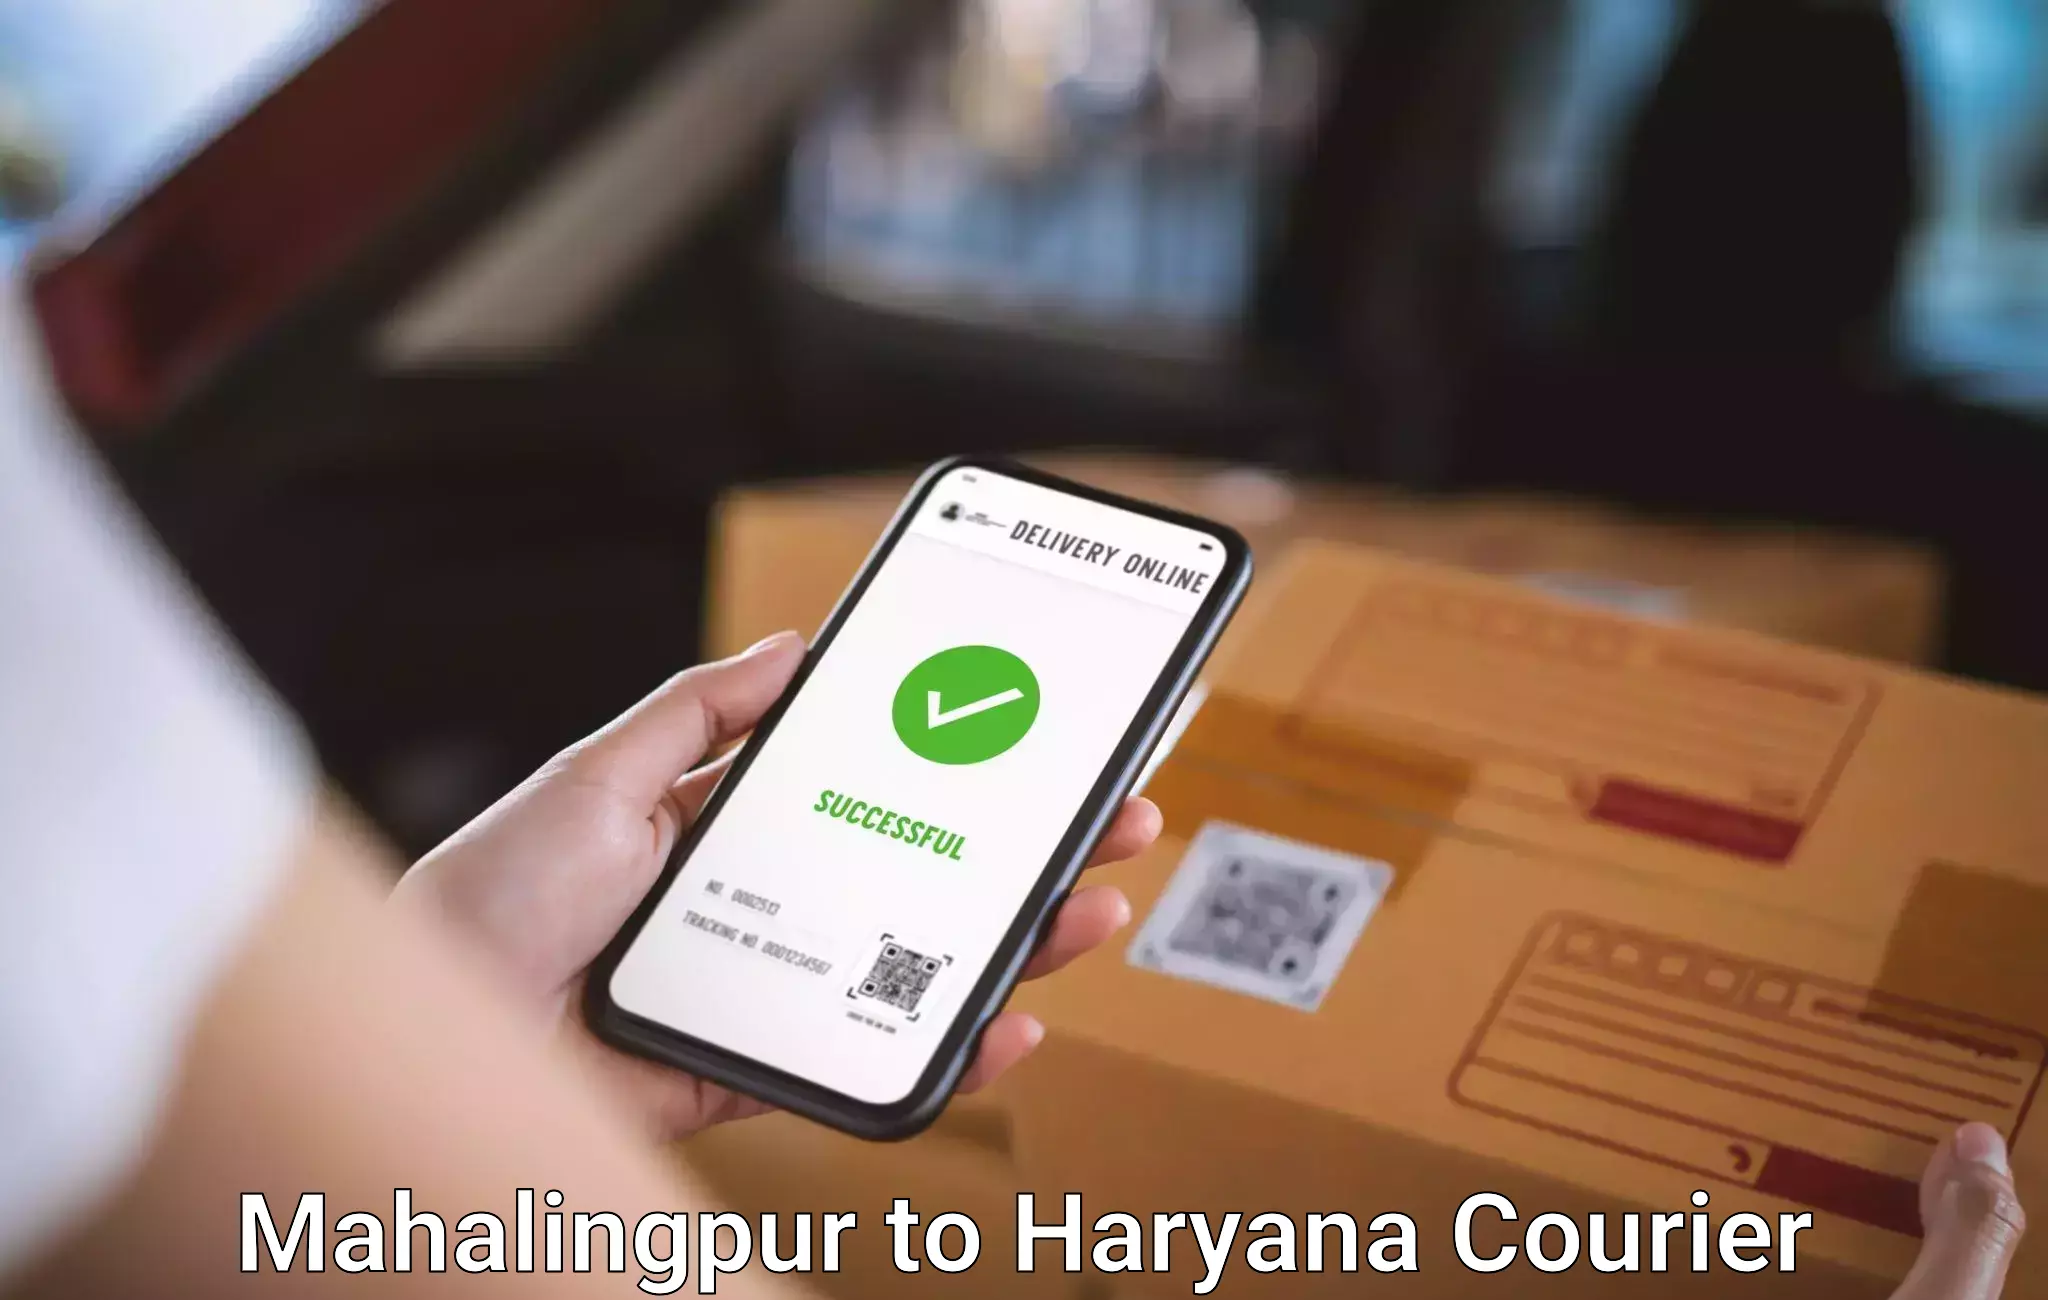 Baggage shipping calculator Mahalingpur to IIIT Sonepat